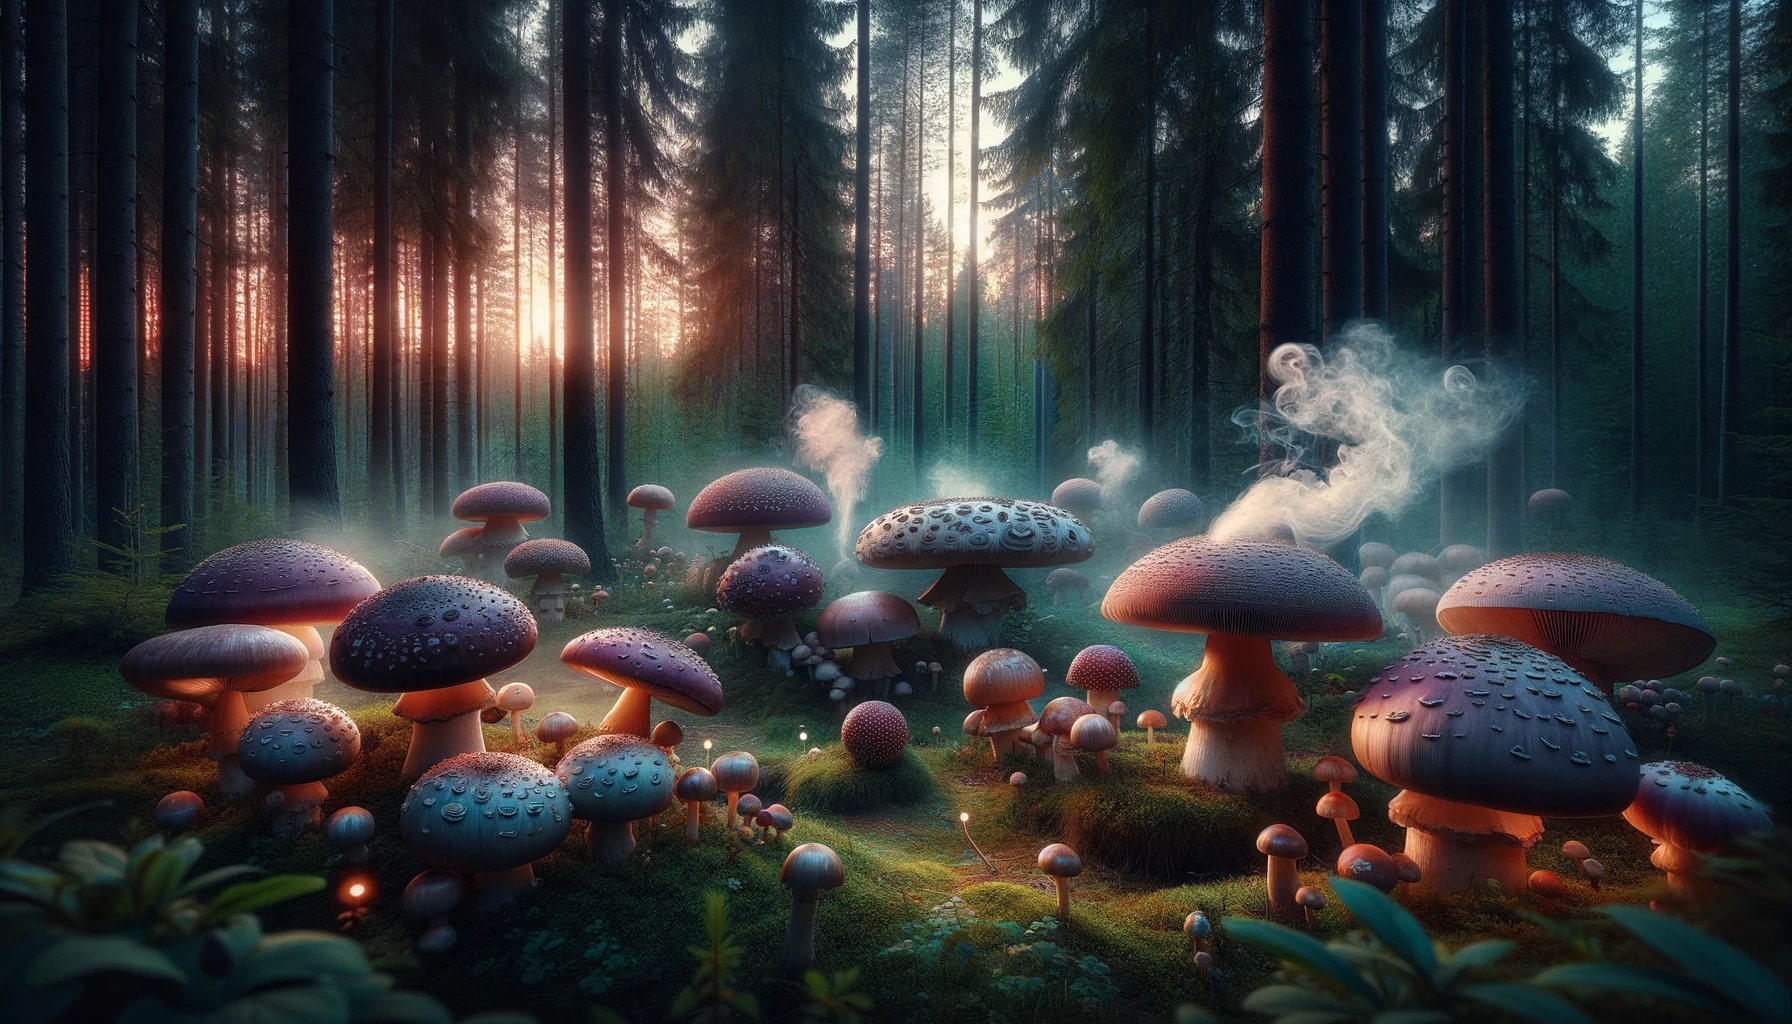 How to smoke magic mushrooms